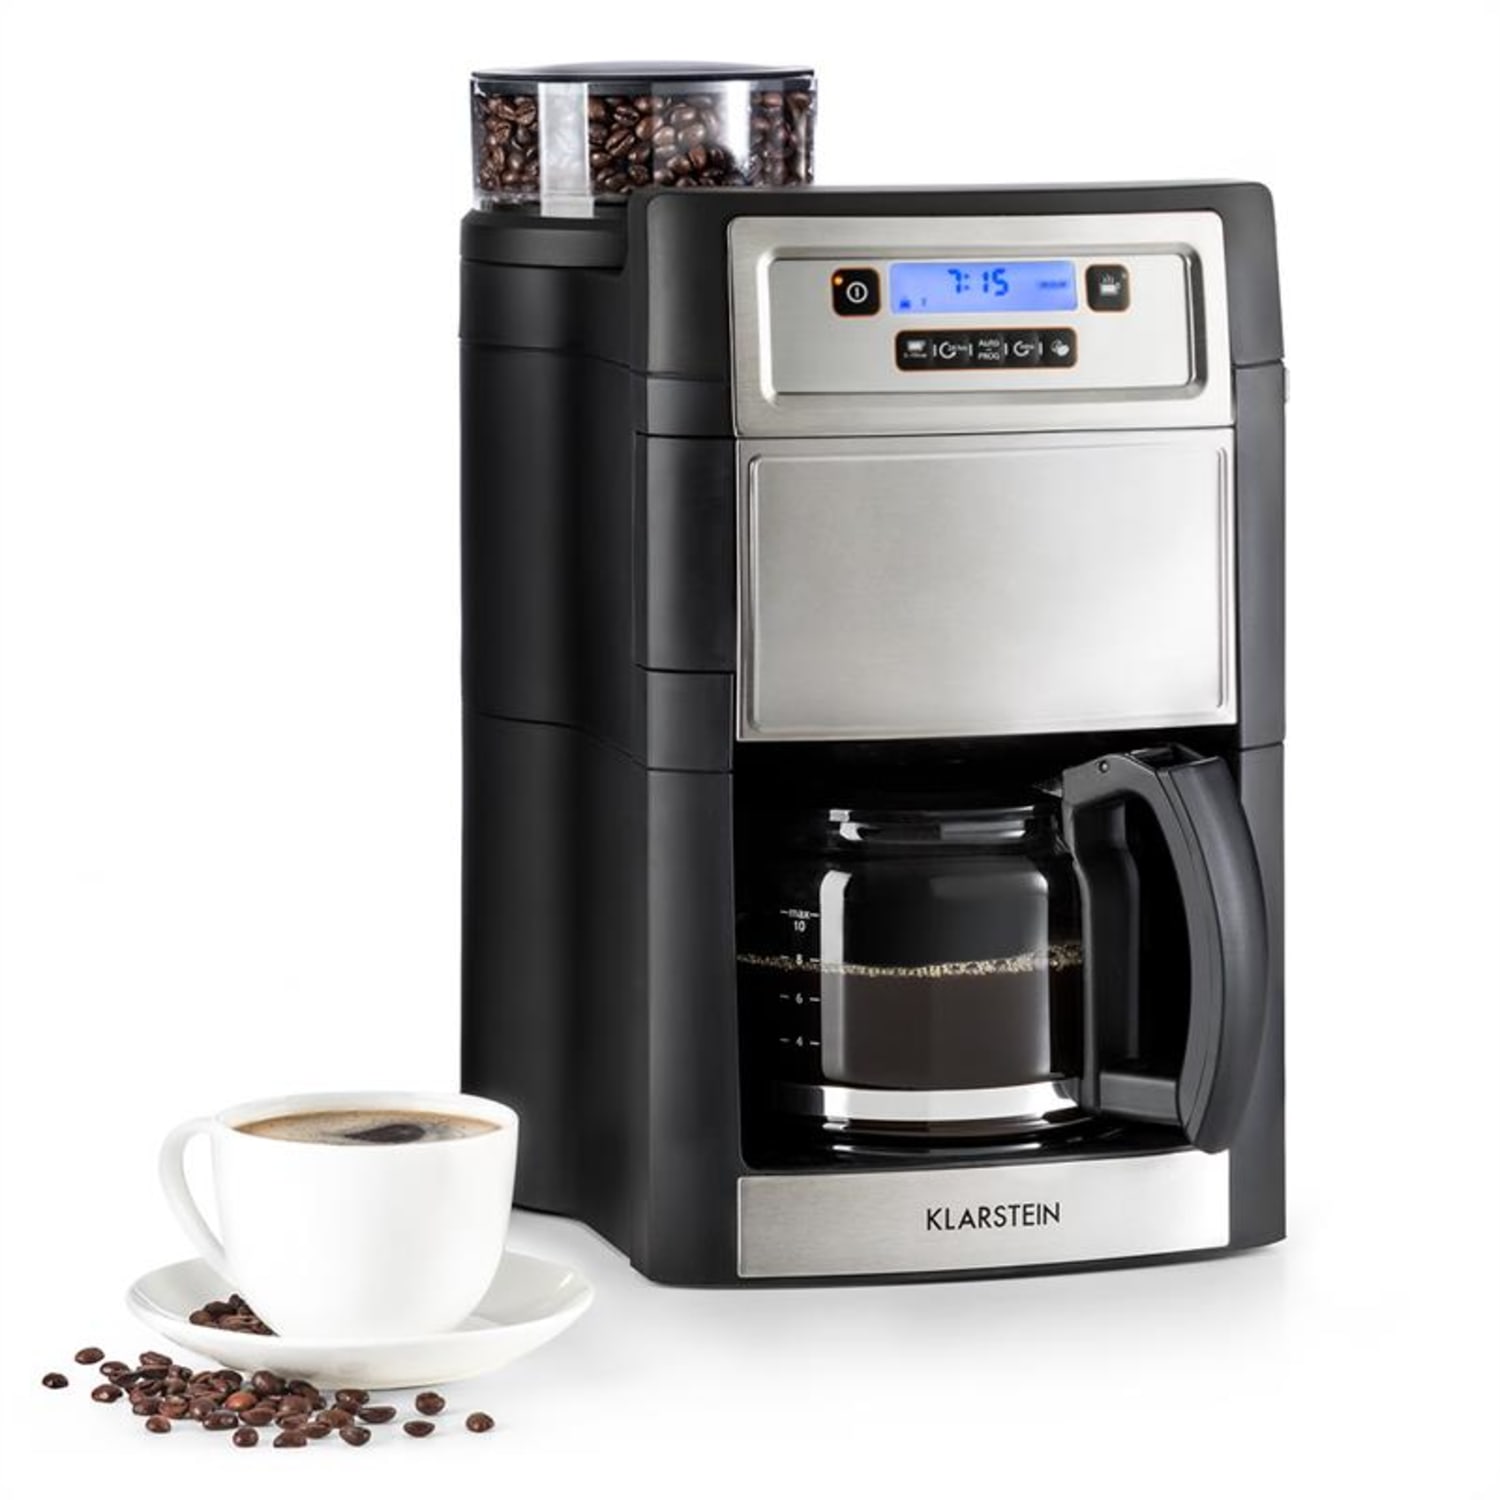 H.koenig mgx90 - machine à café filtre avec broyeur noir H.Koenig